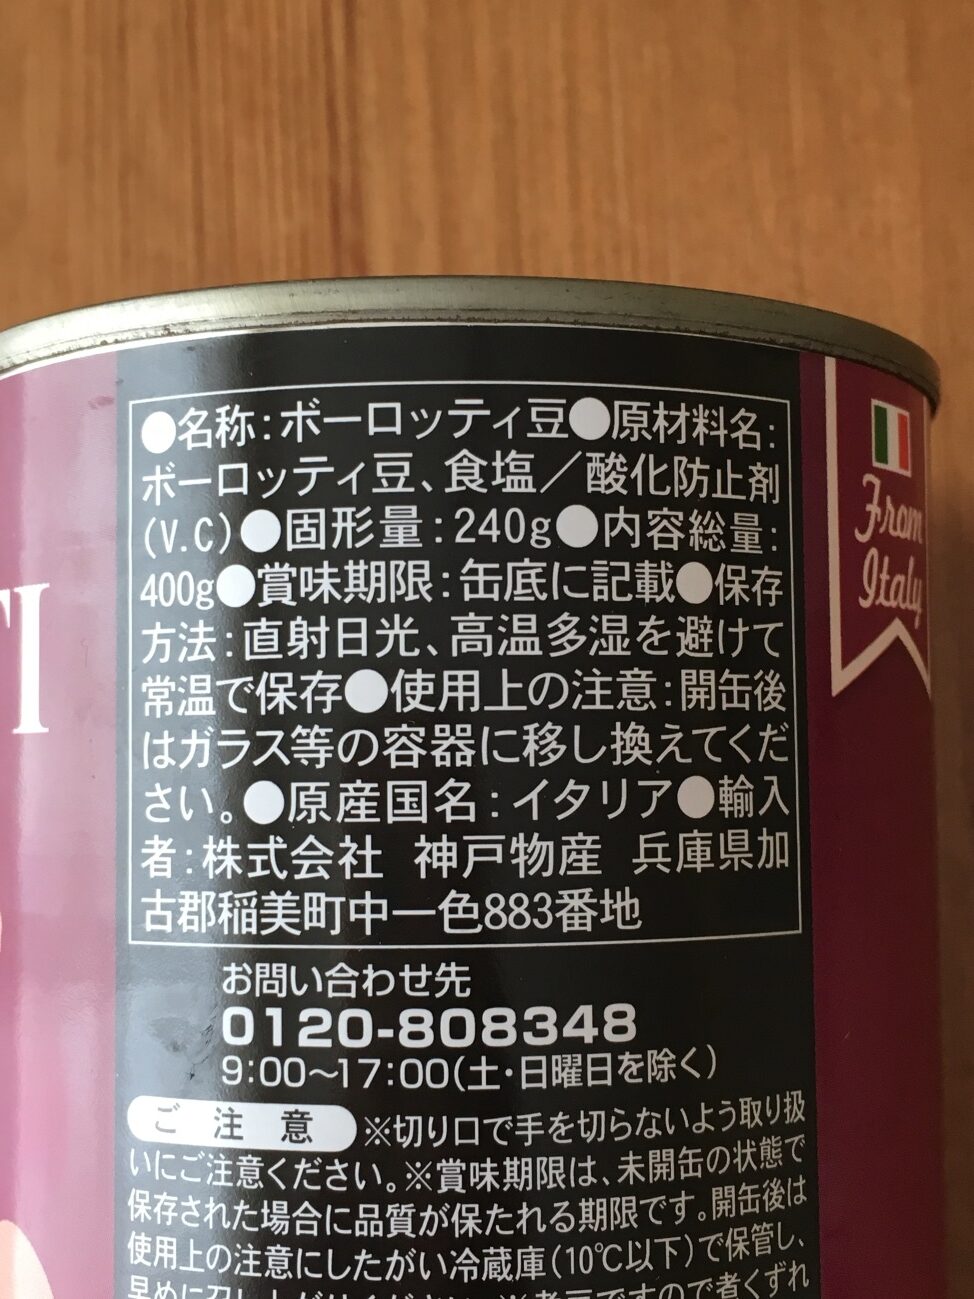 業務スーパーのボーロッティ豆の原材料名と原産国名の表記